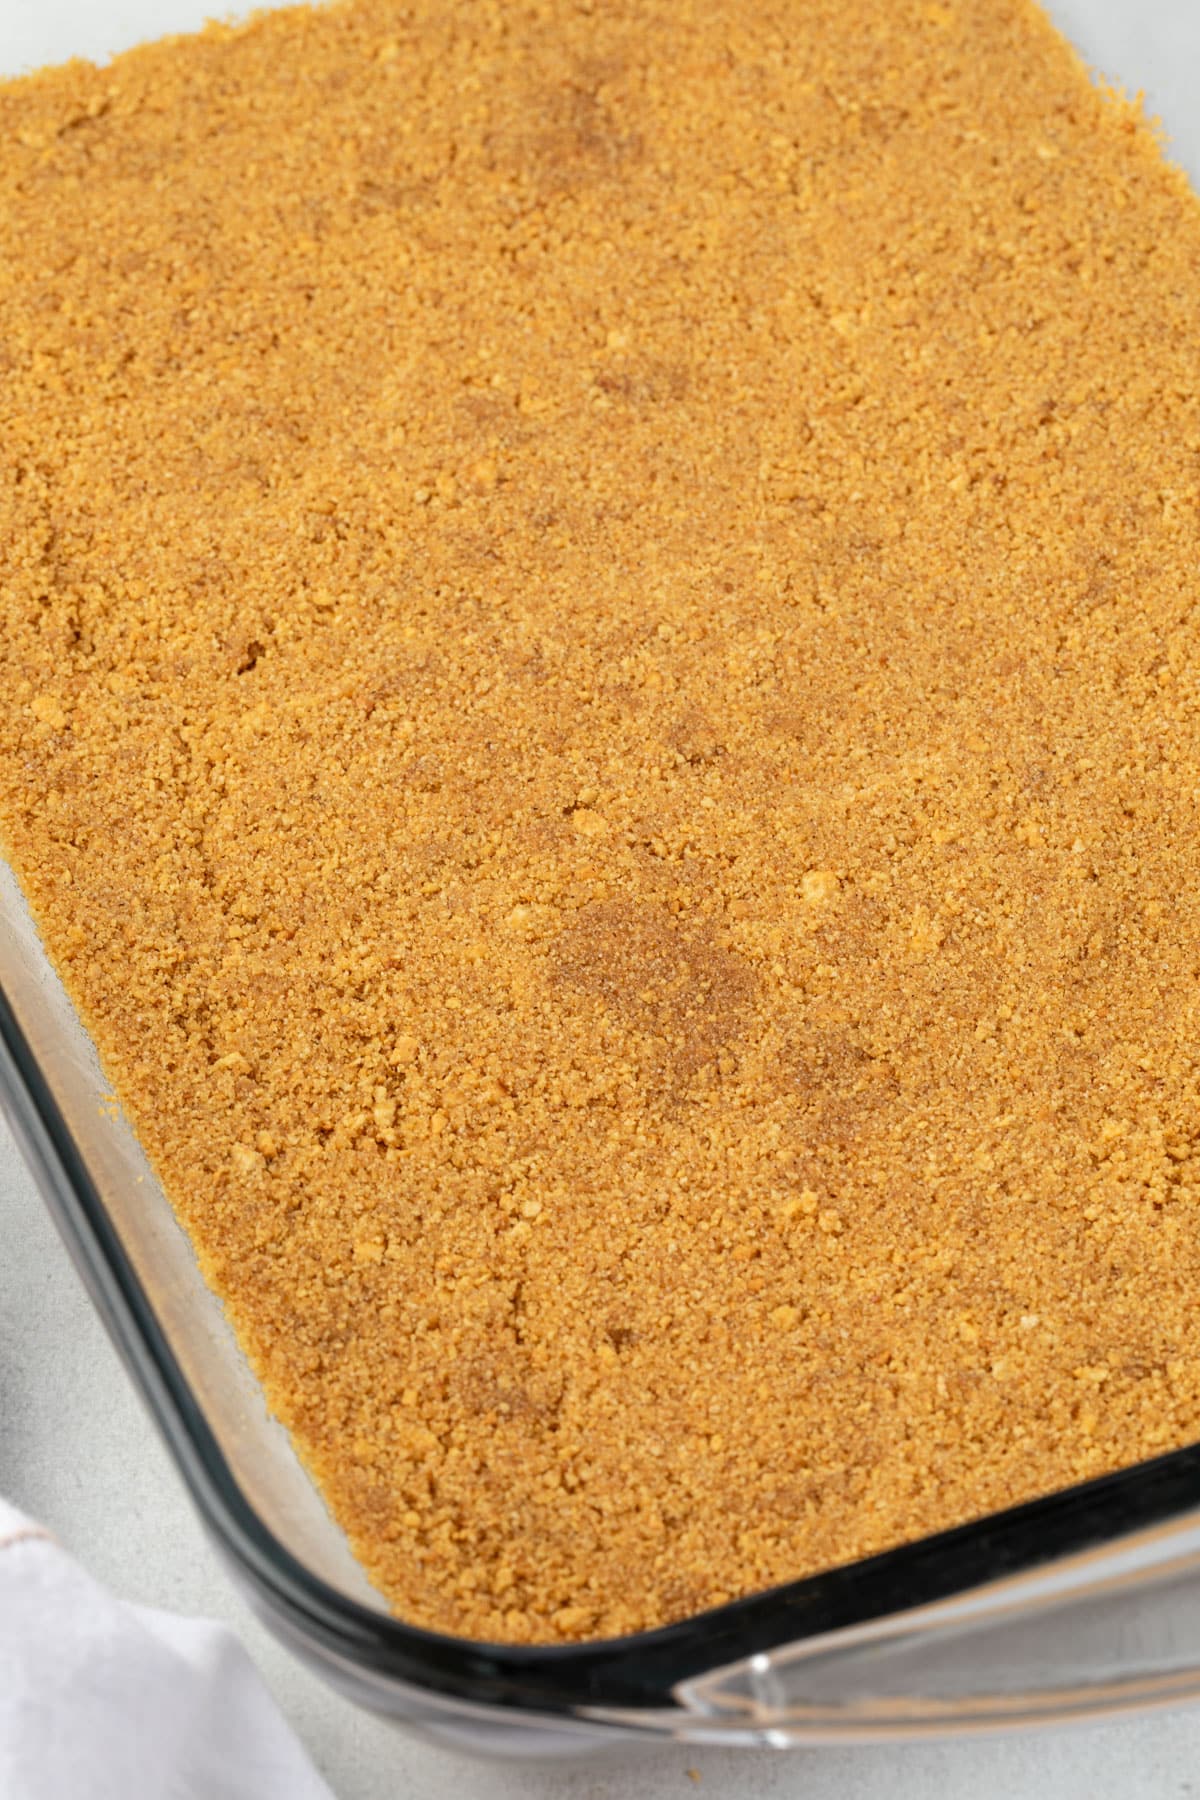 Golden graham cracker crust in a clear glass pan.